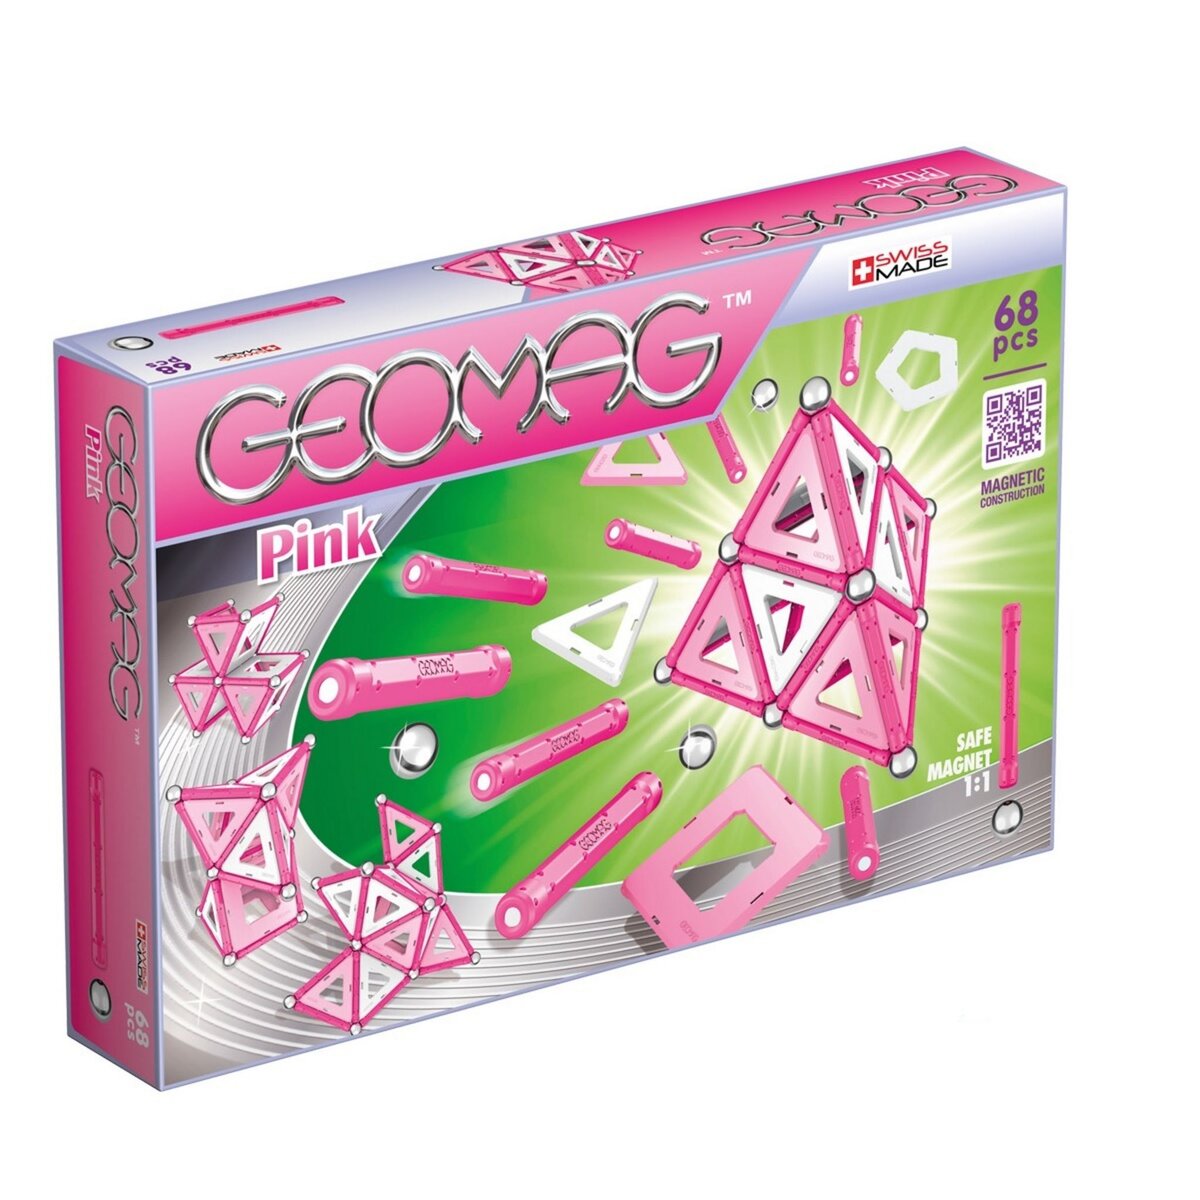 GEOMAG Coffret Geomag pink 68 pièces